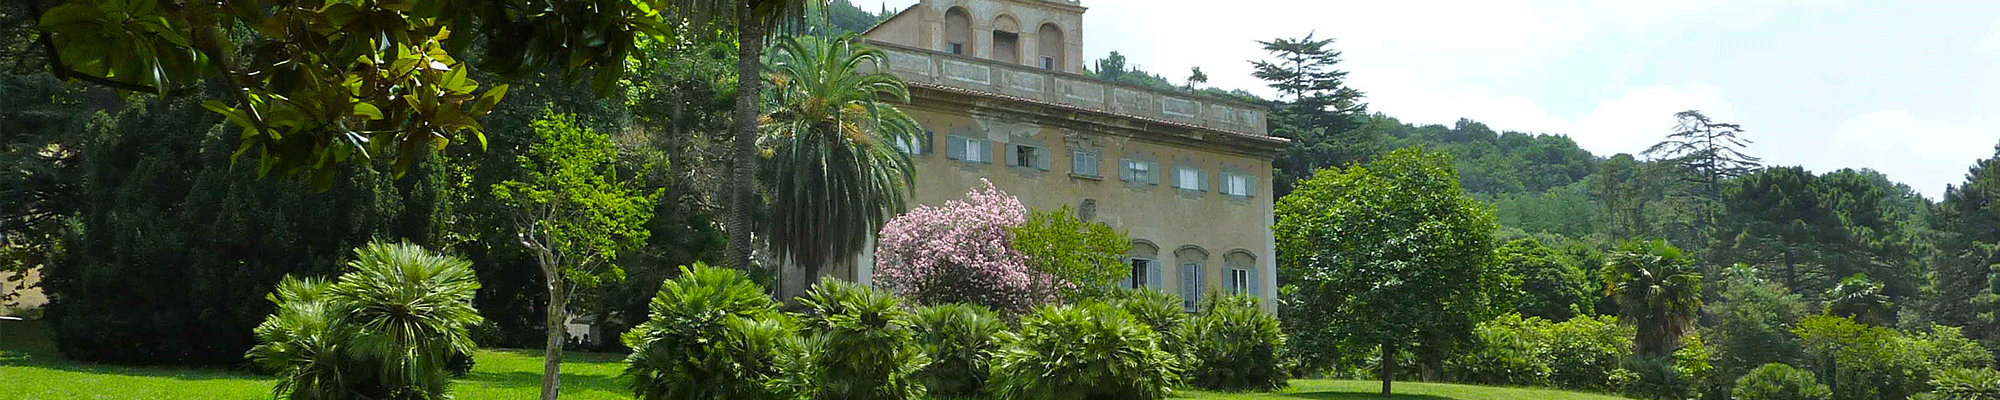 Esterno della Villa di Corliano in provincia di Pisa